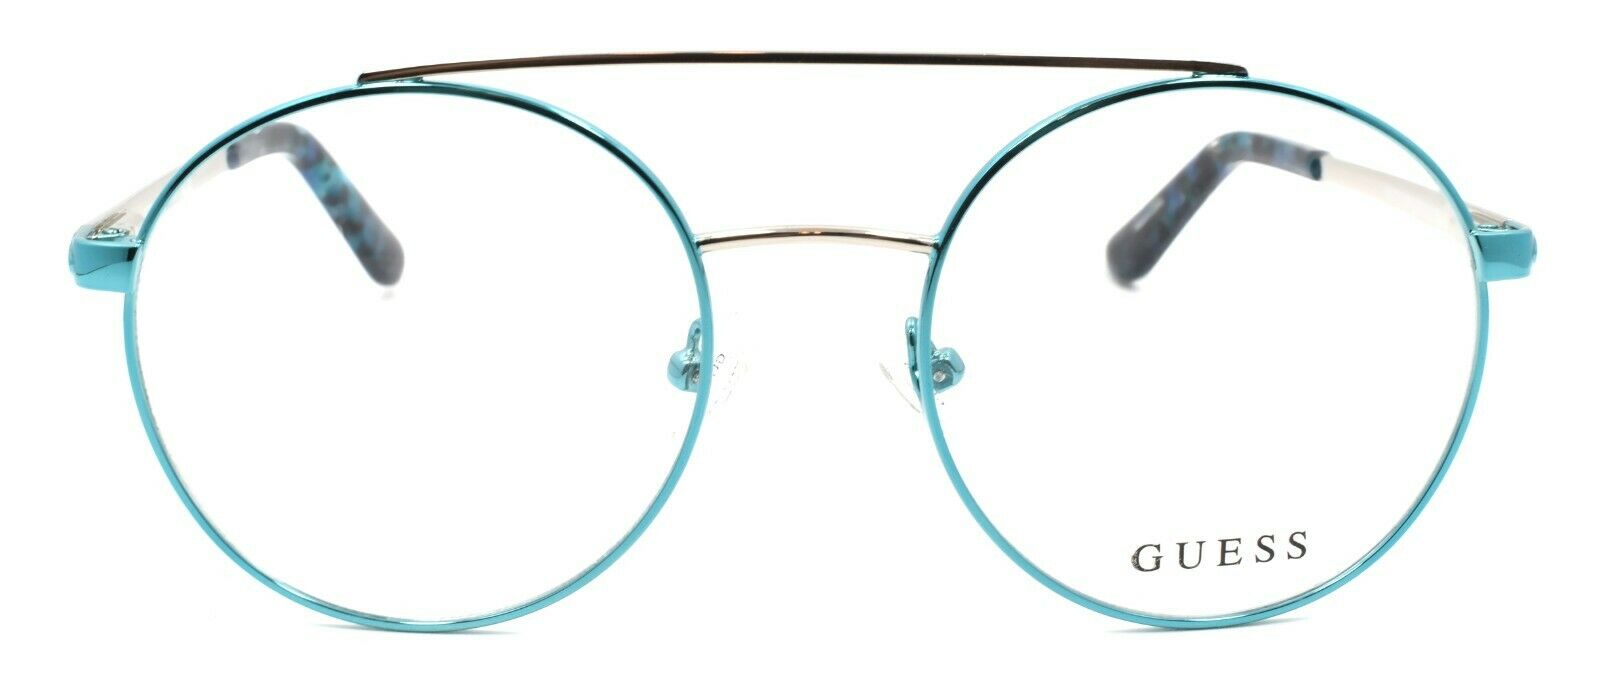 2-GUESS GU2714 084 Women's Eyeglasses Frames Aviator 50-18-135 Shiny Light Blue-889214025524-IKSpecs